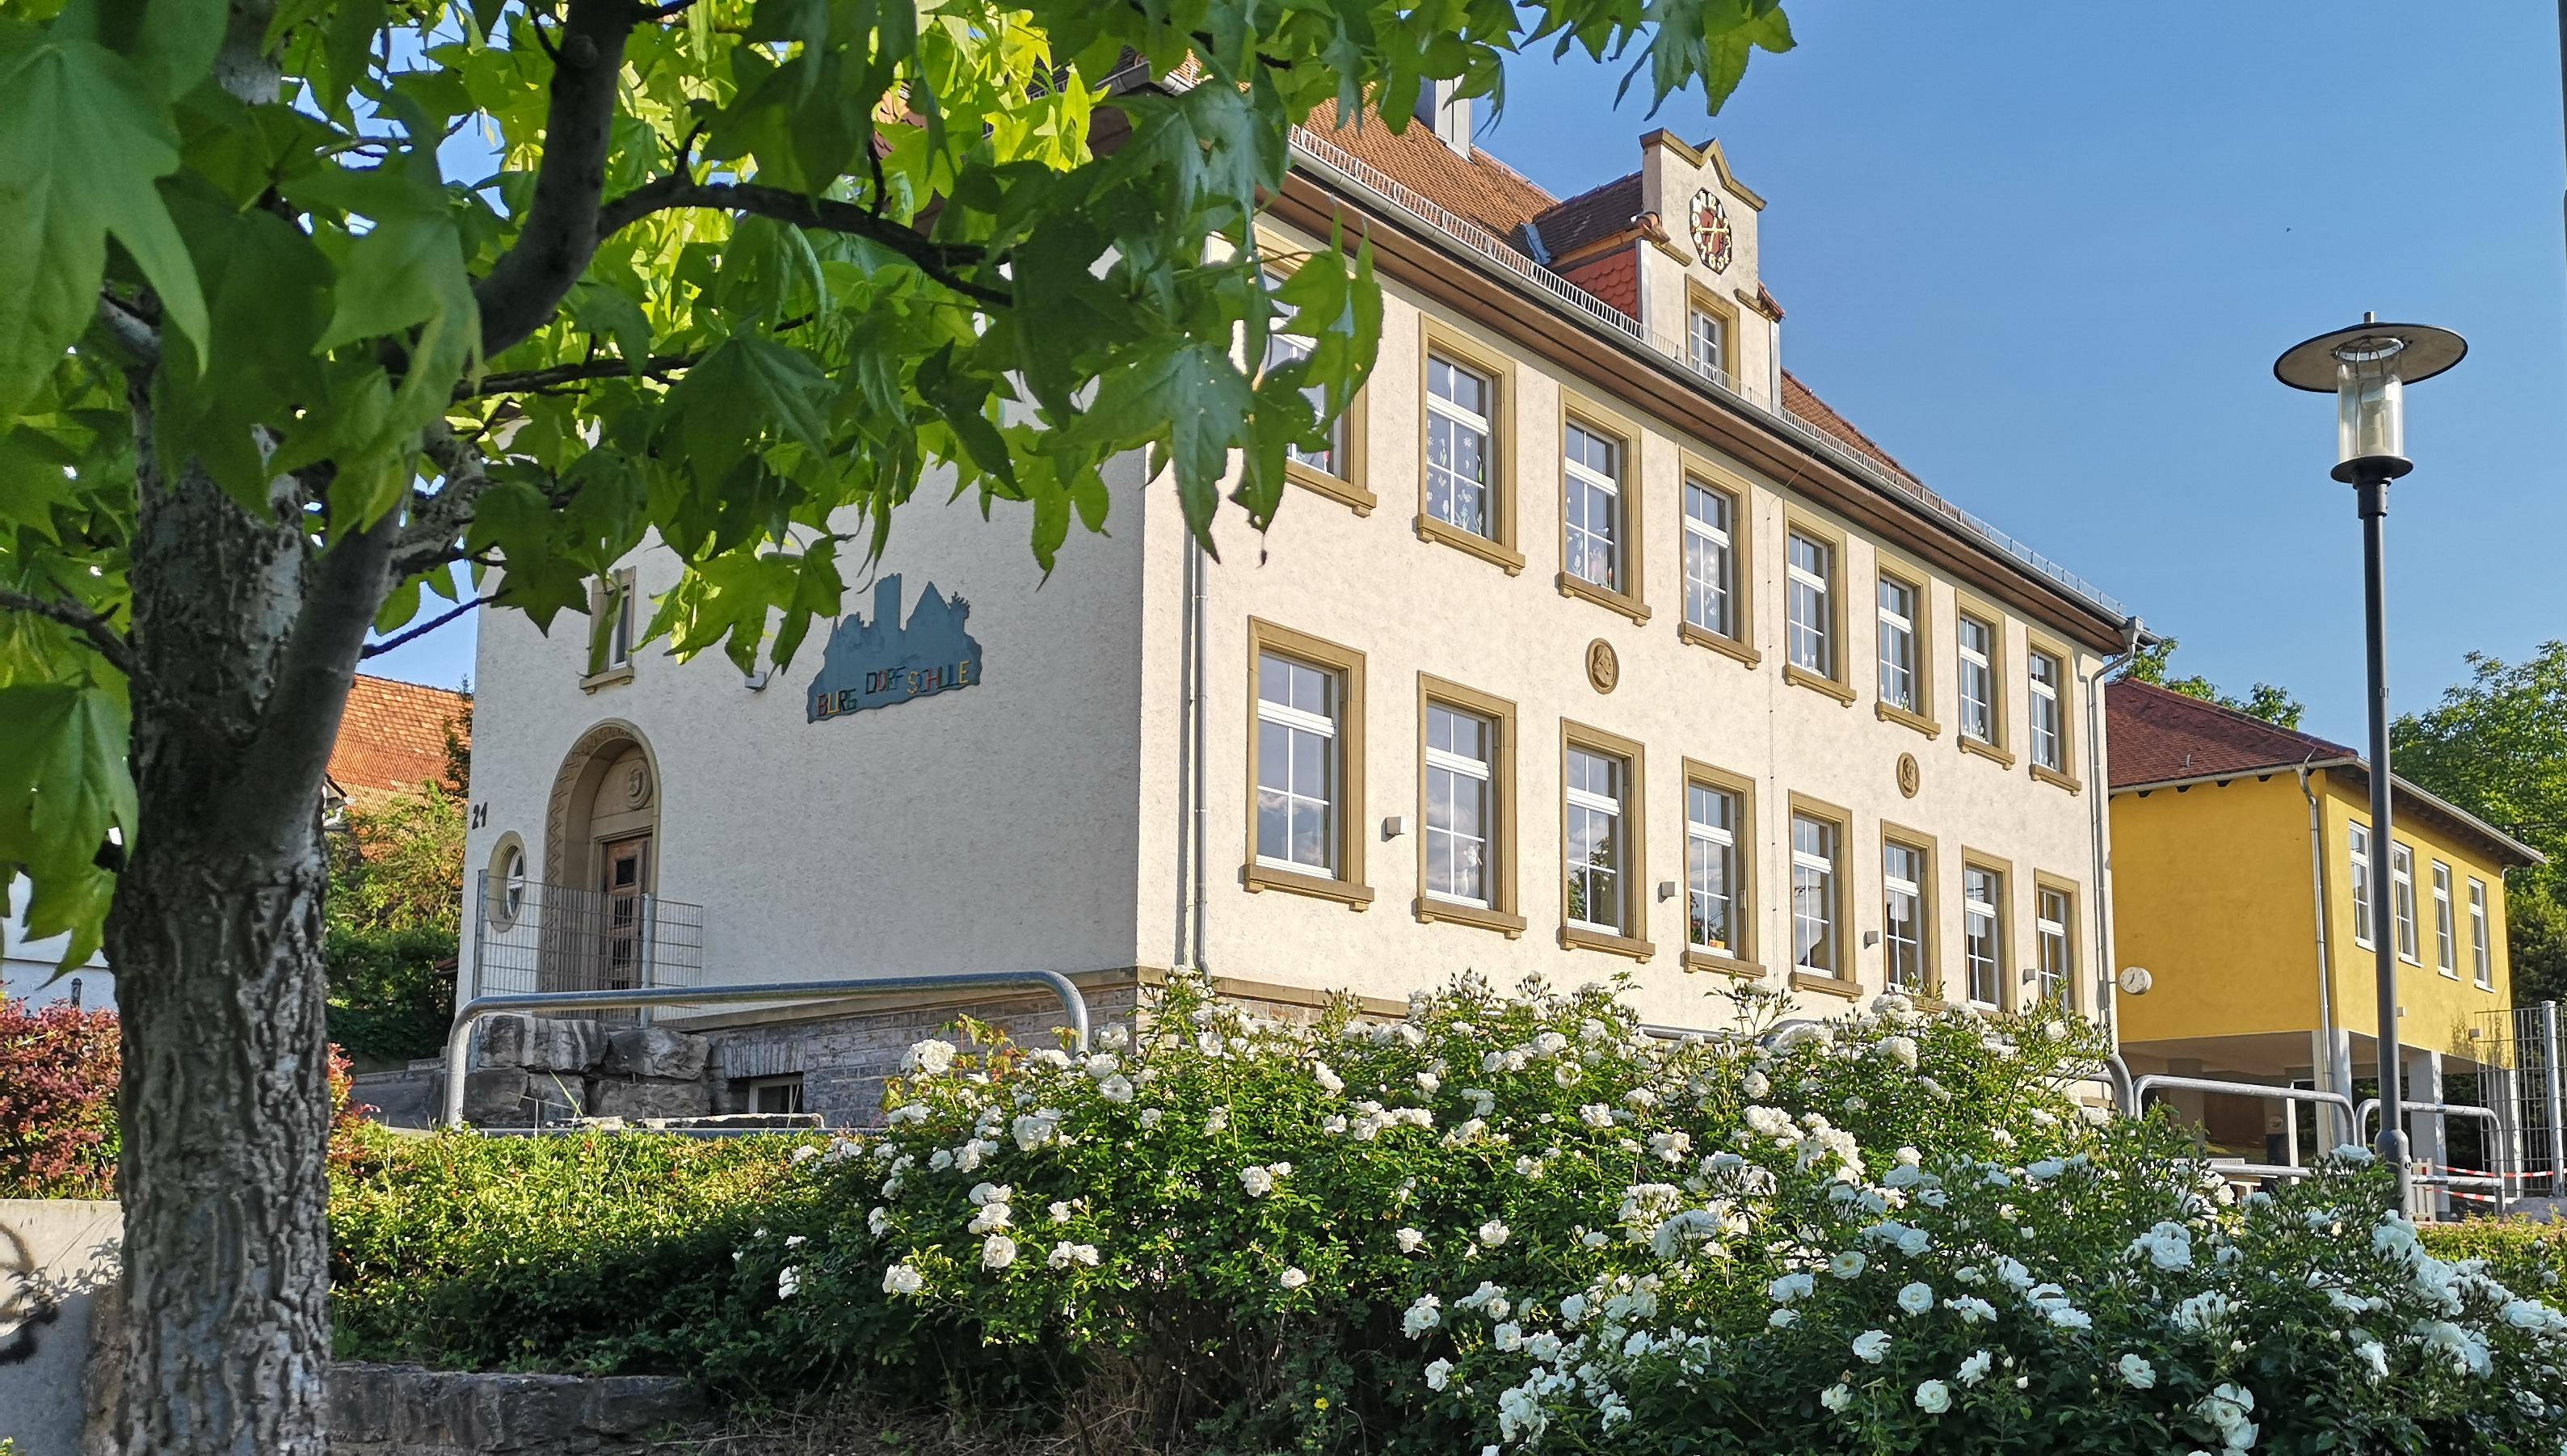  Burgdorfschule Neidenstein 